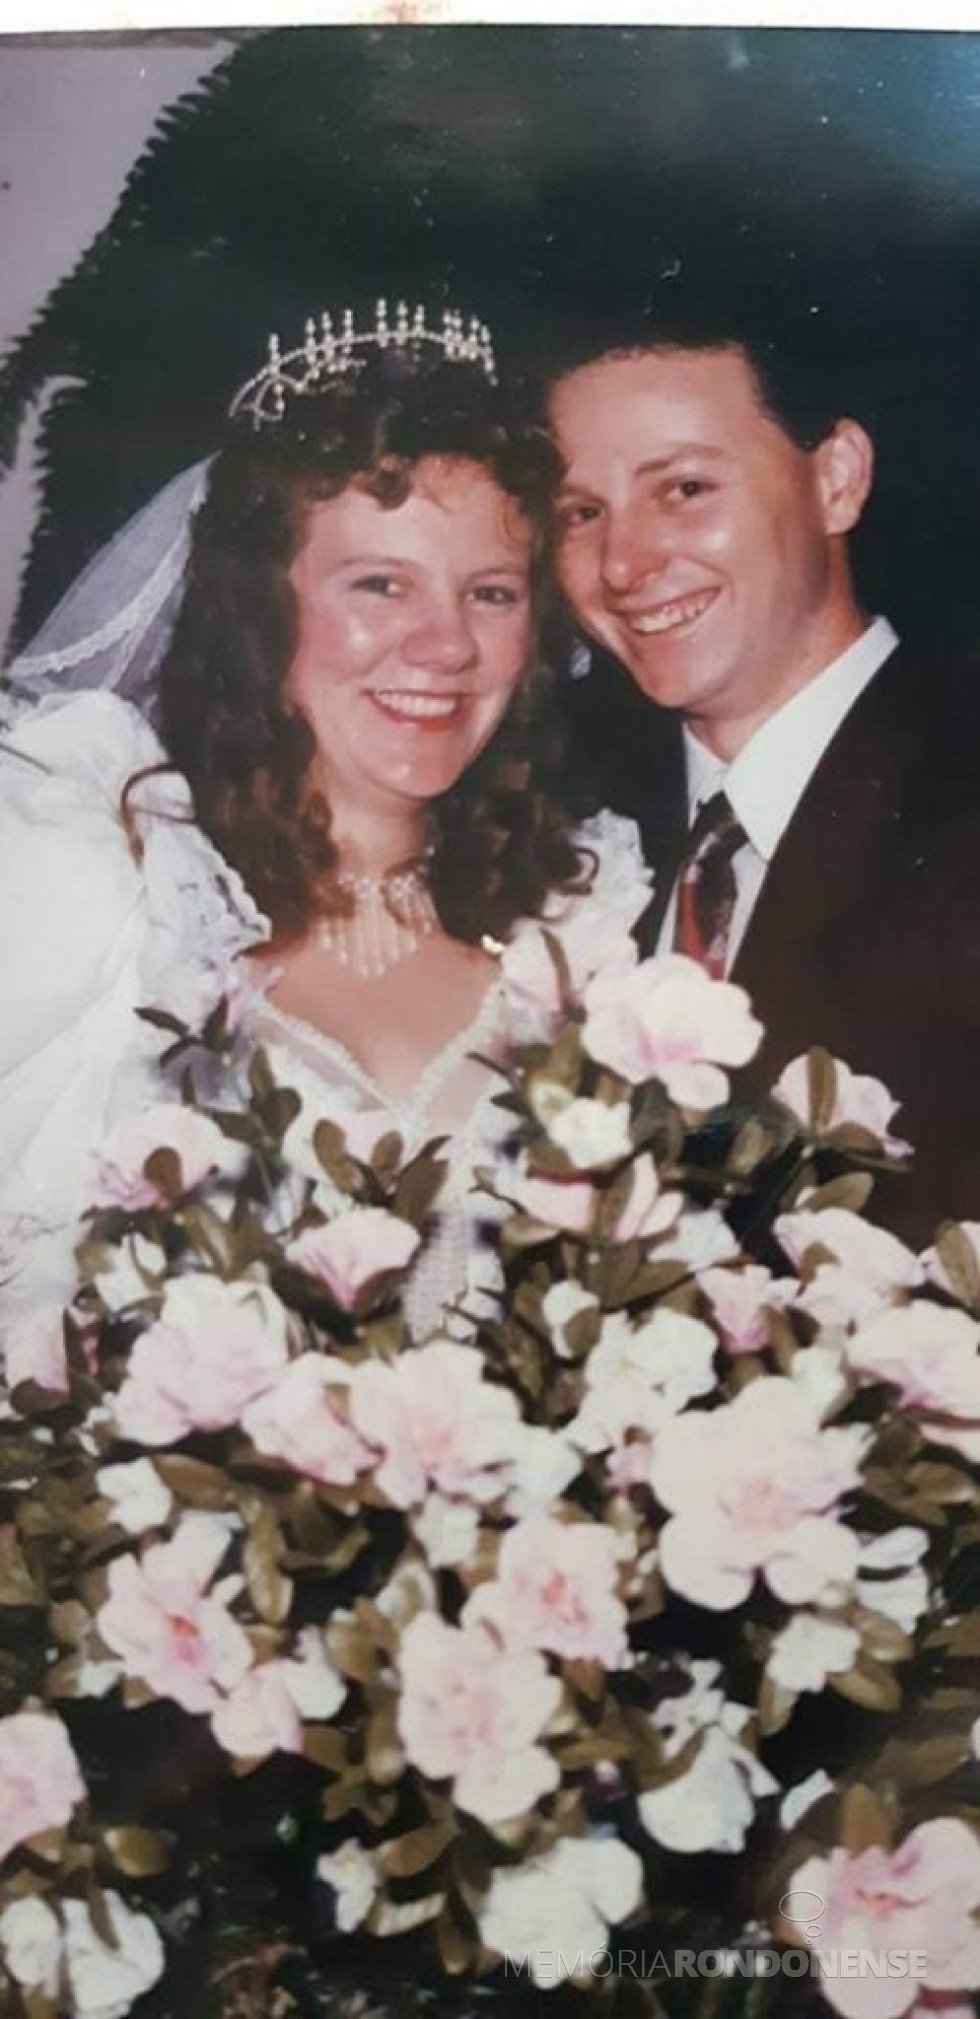 || Noivos Sandra Joner e Márcio Cosseau que casaram em 23 de setembro de 1995.
Imagem: Acervo do casal - FOTO 3 - 